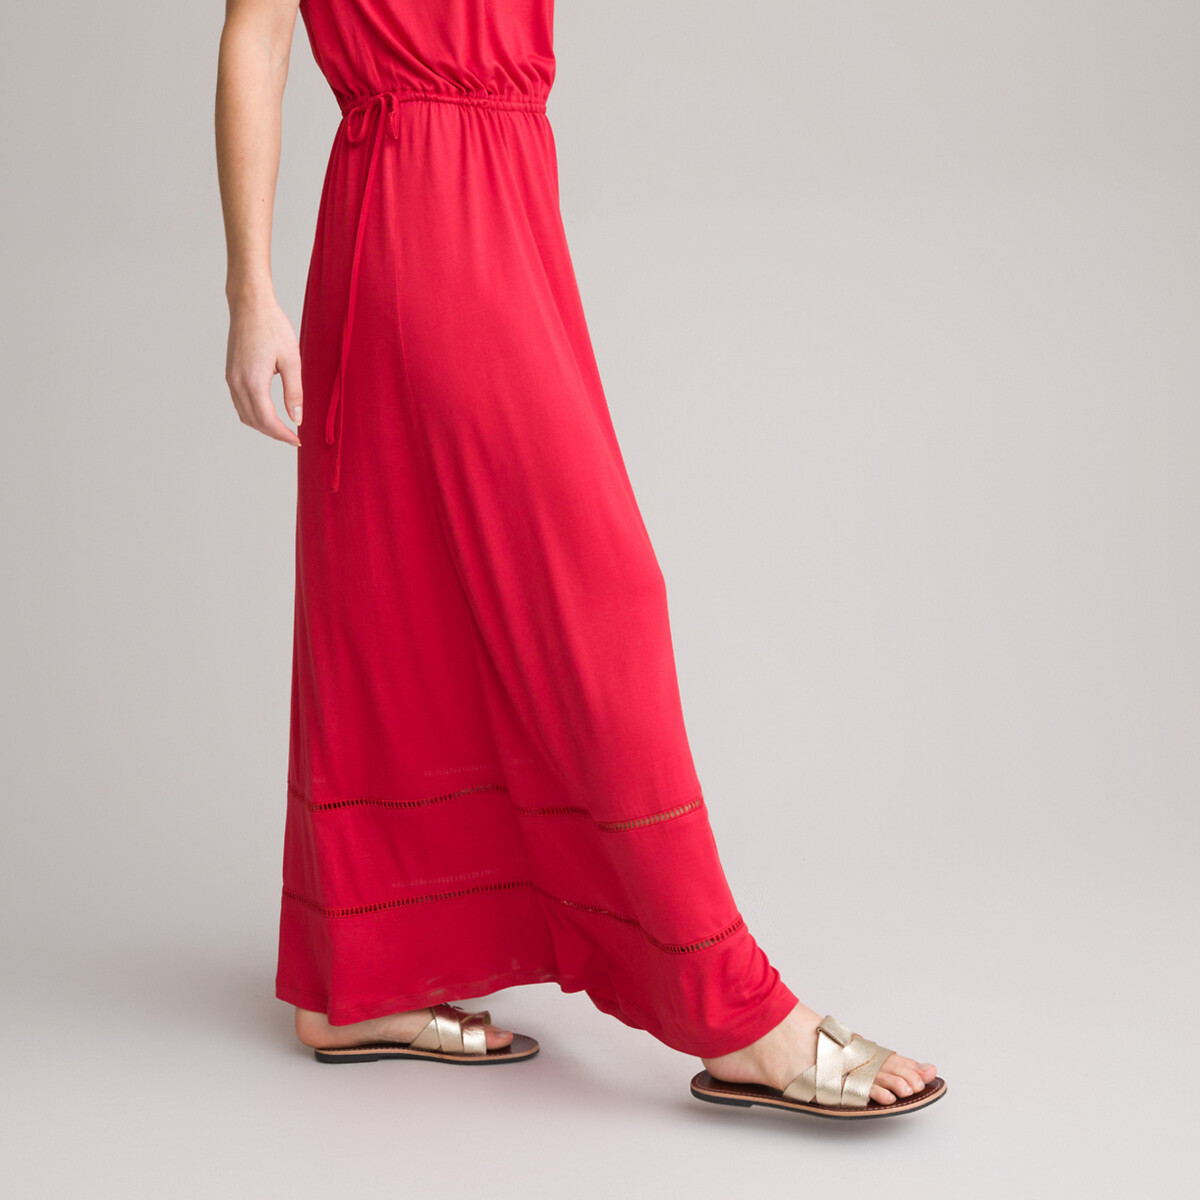 Платье Прямое длинное без рукавов 44 красный LaRedoute, размер 44 - фото 3